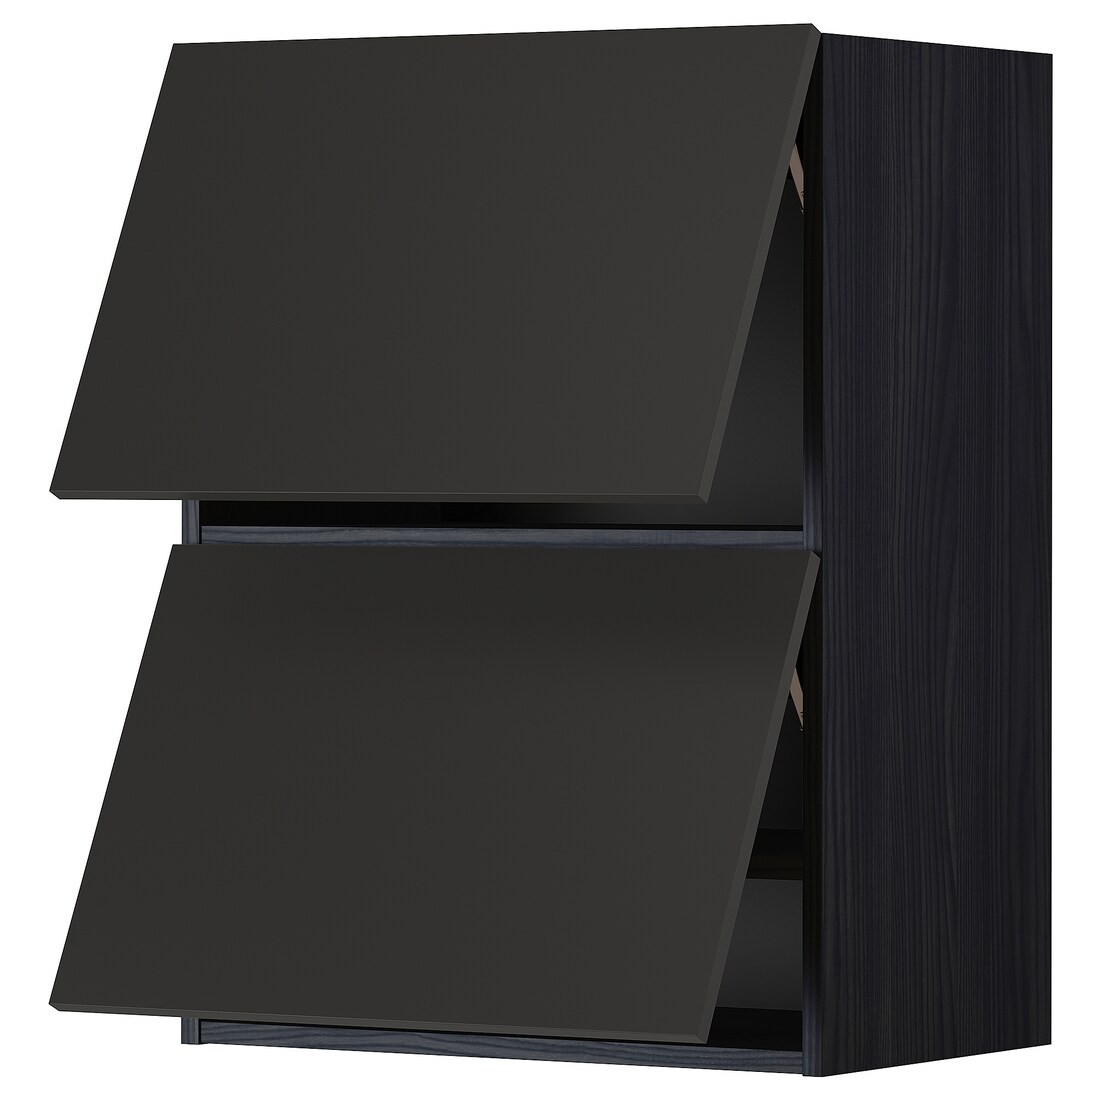 METOD МЕТОД Навесной горизонтальный шкаф / 2 двери, черный / Nickebo матовый антрацит, 60x80 см